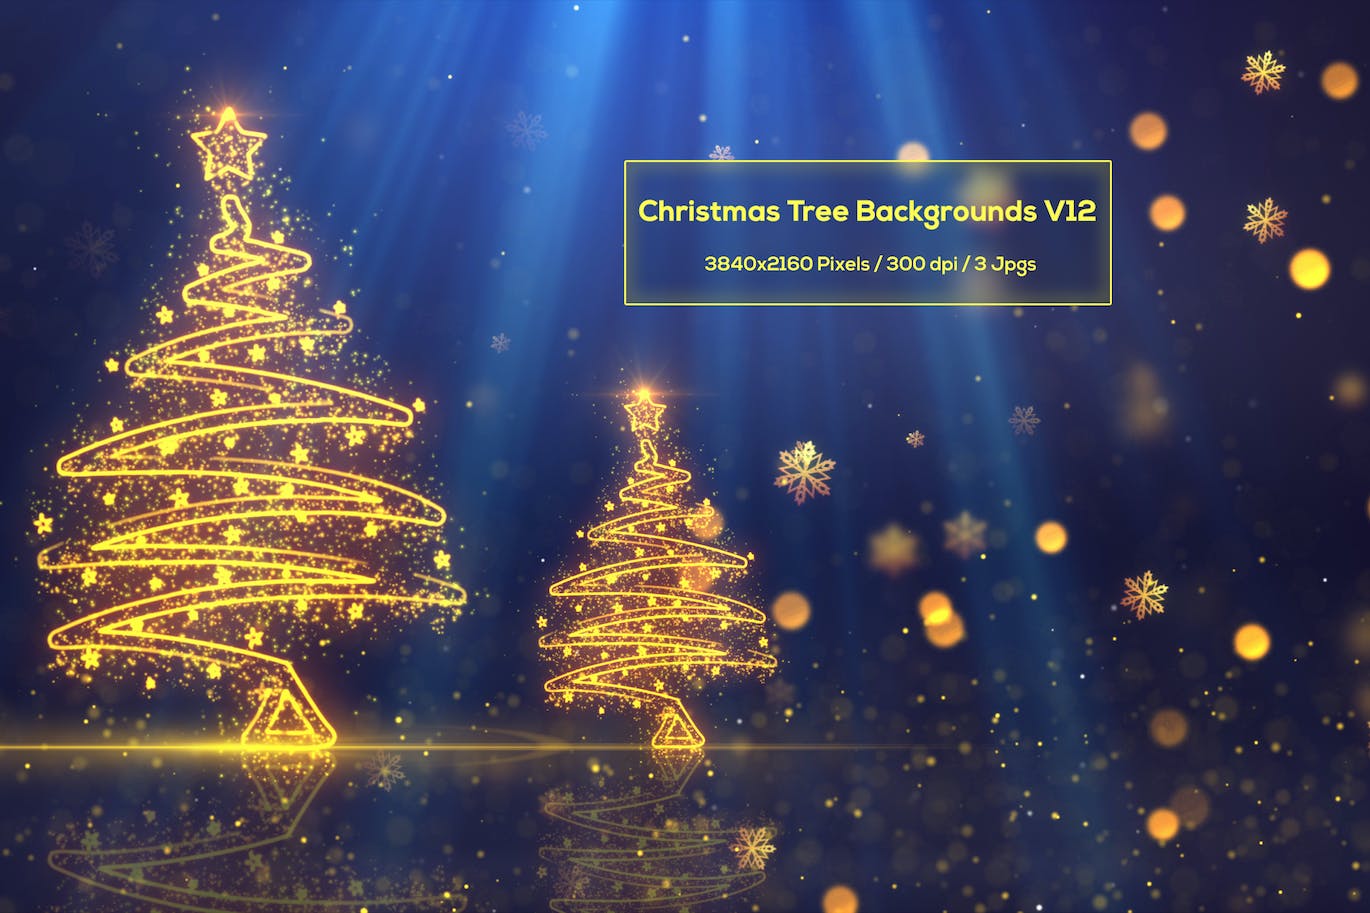 圣诞树背景 V12 (JPG)